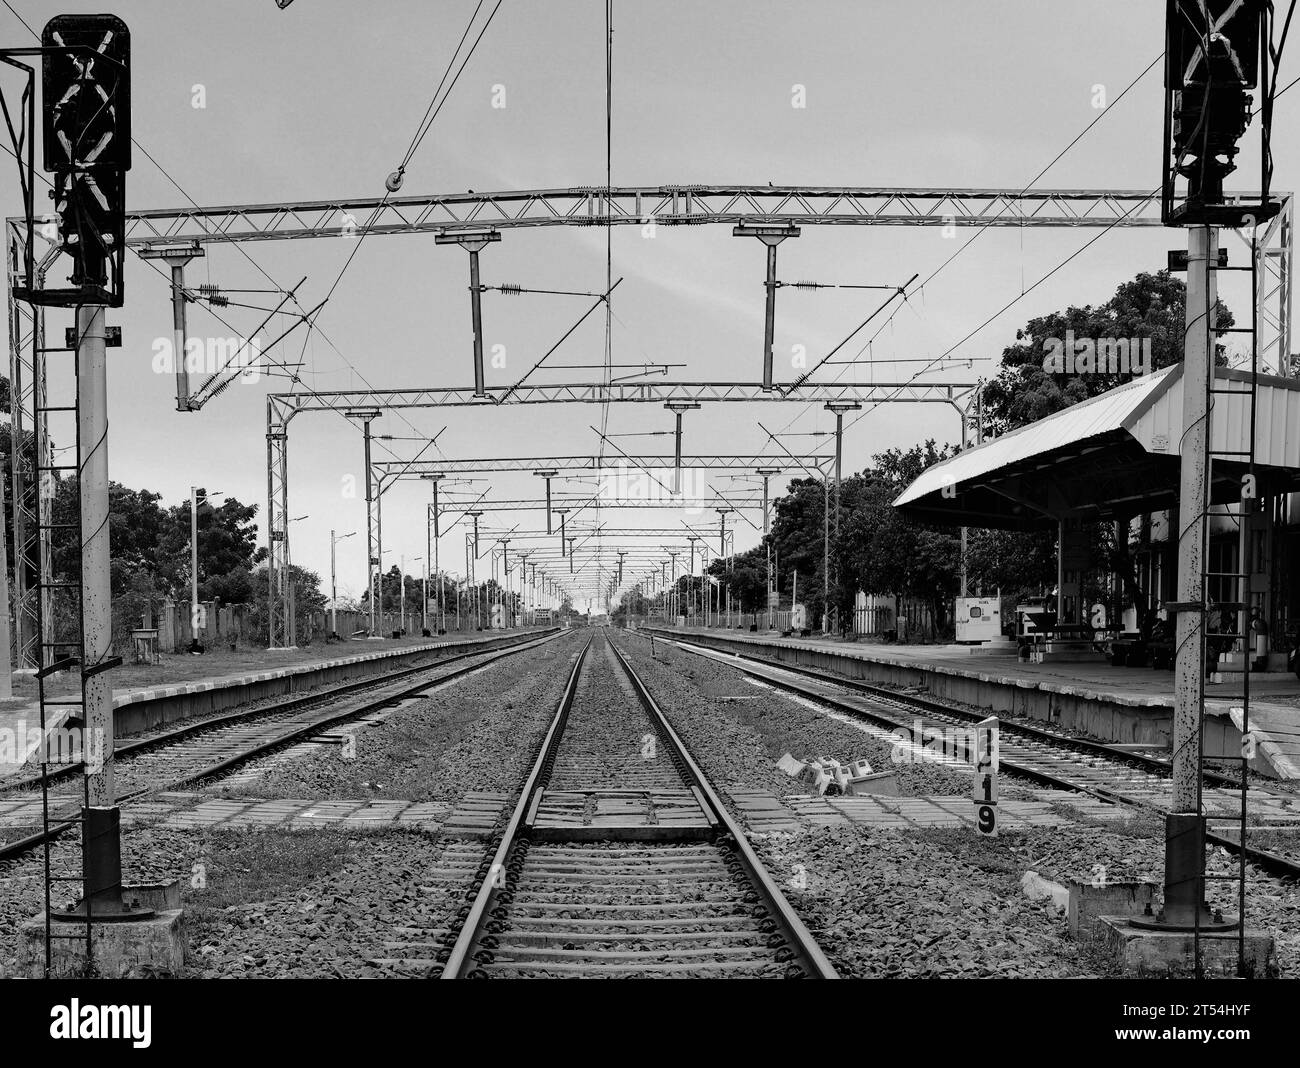 Binari che attraversano una stazione ferroviaria vuota con più archi metallici in fila che fissano i cavi elettrici ad alta tensione Foto Stock